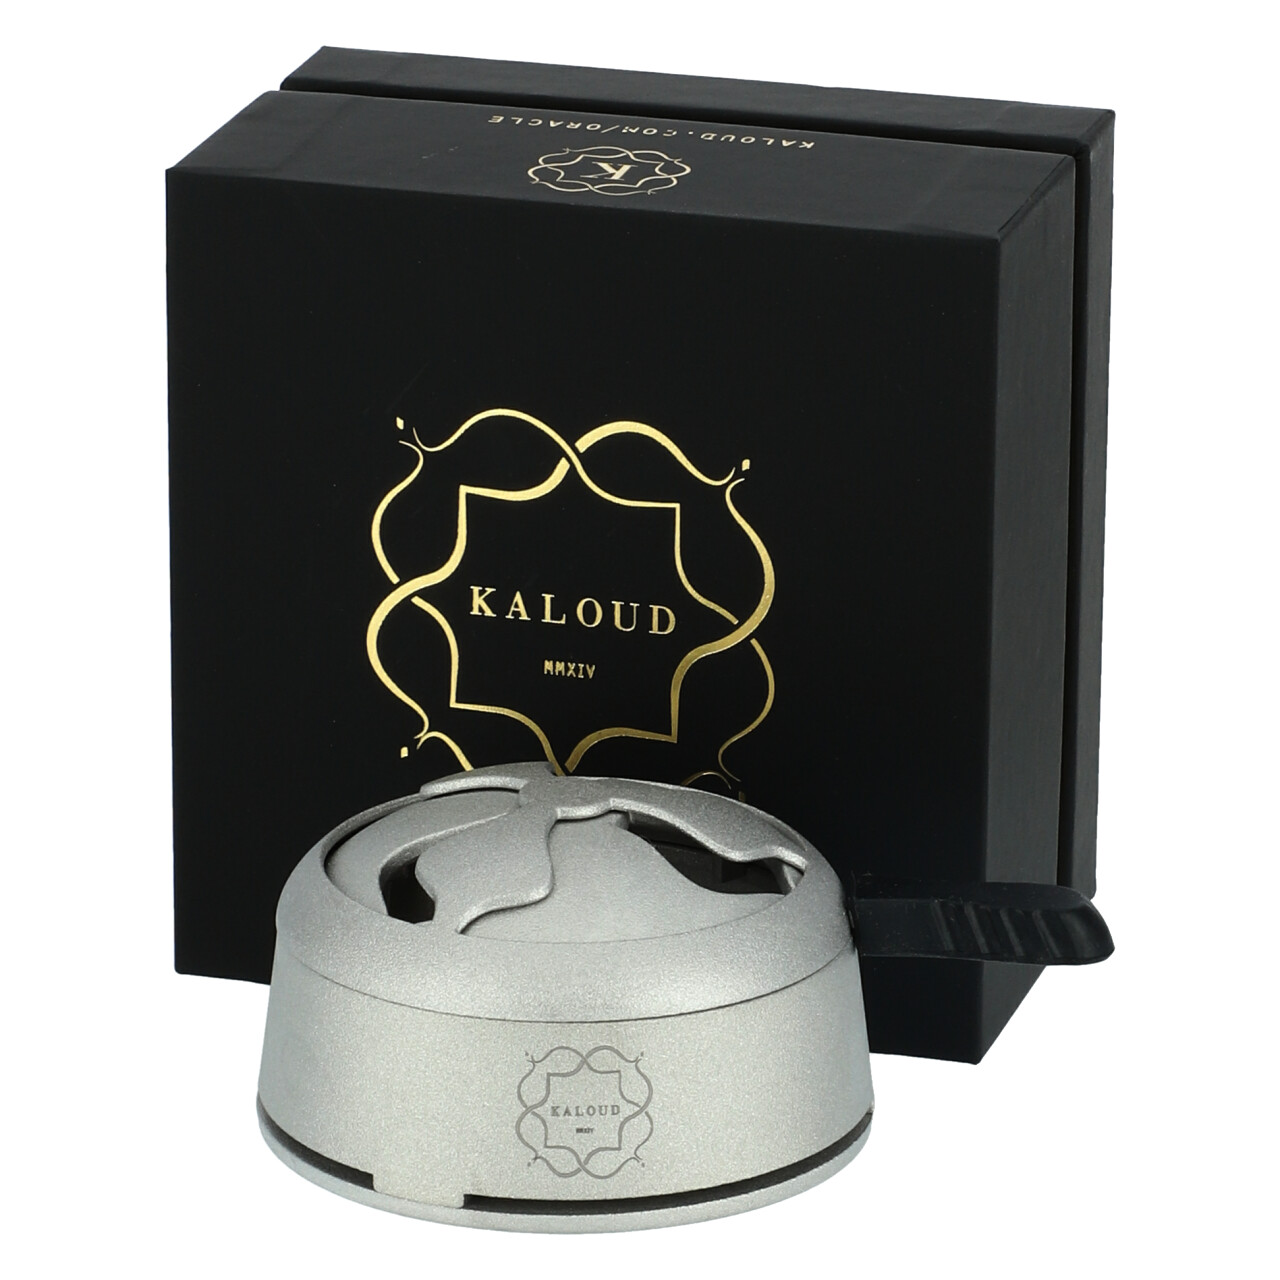 Kaloud Lotus Plus - Silber - Kopfaufsatz